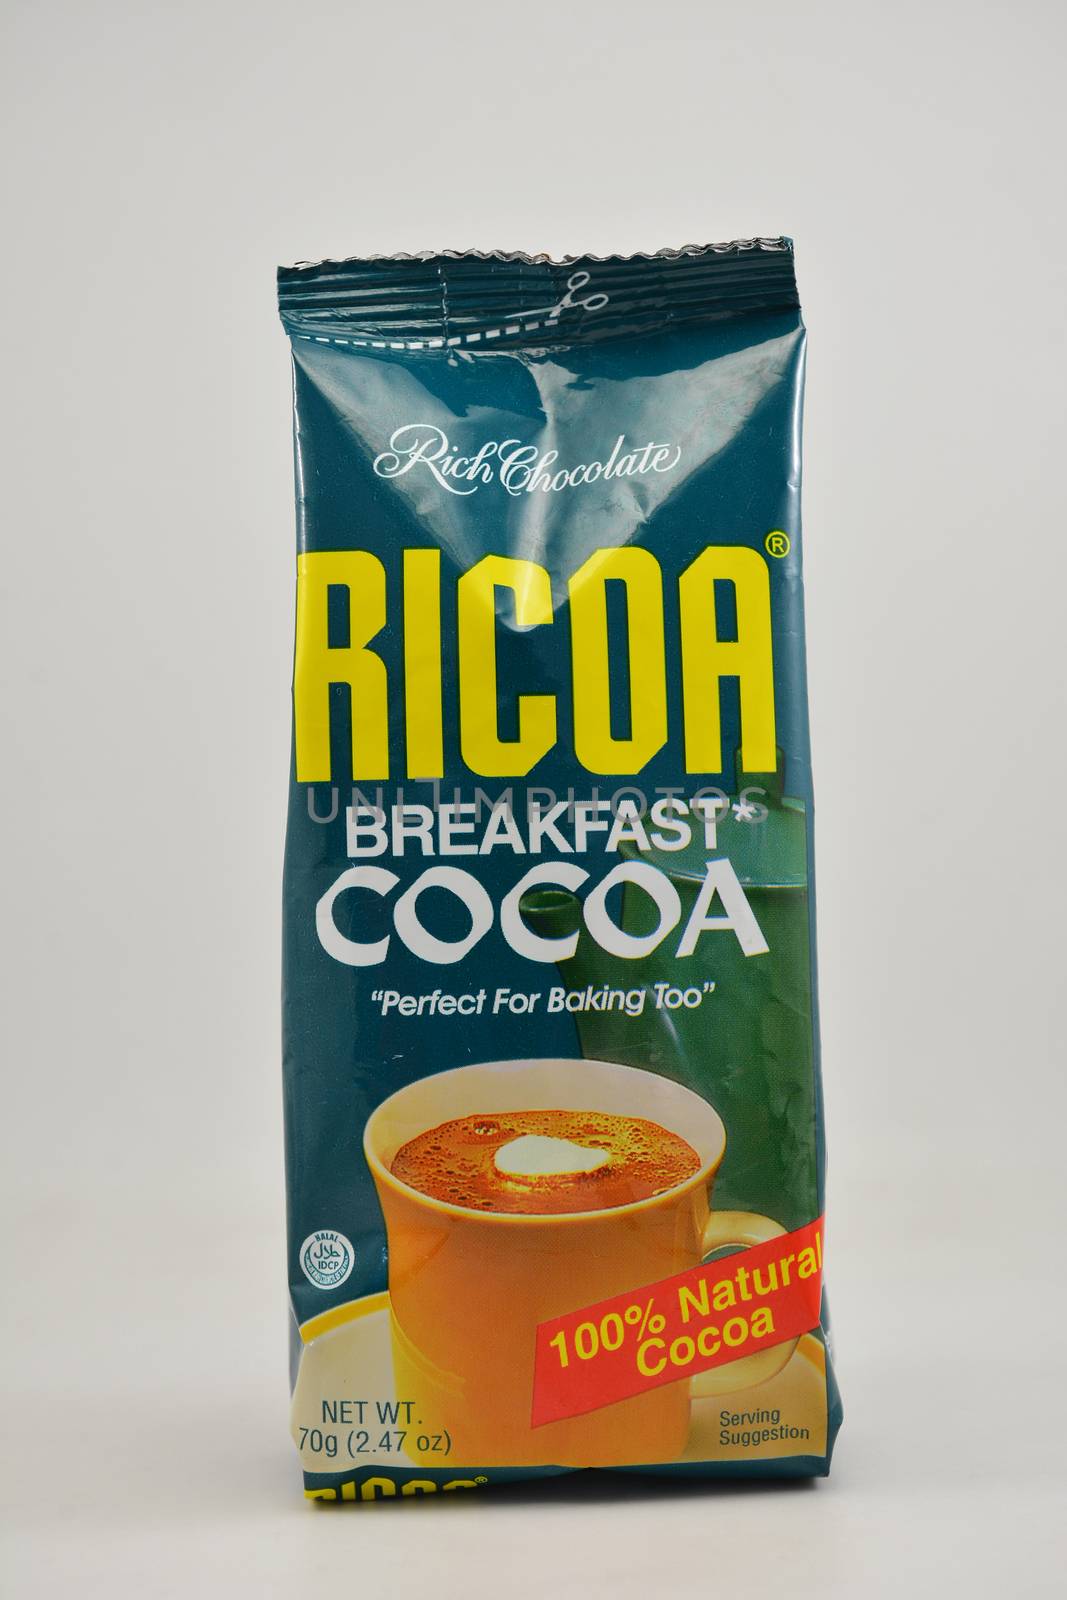 Ricoa breakfast cocoa powder in Manila, Philippines by imwaltersy